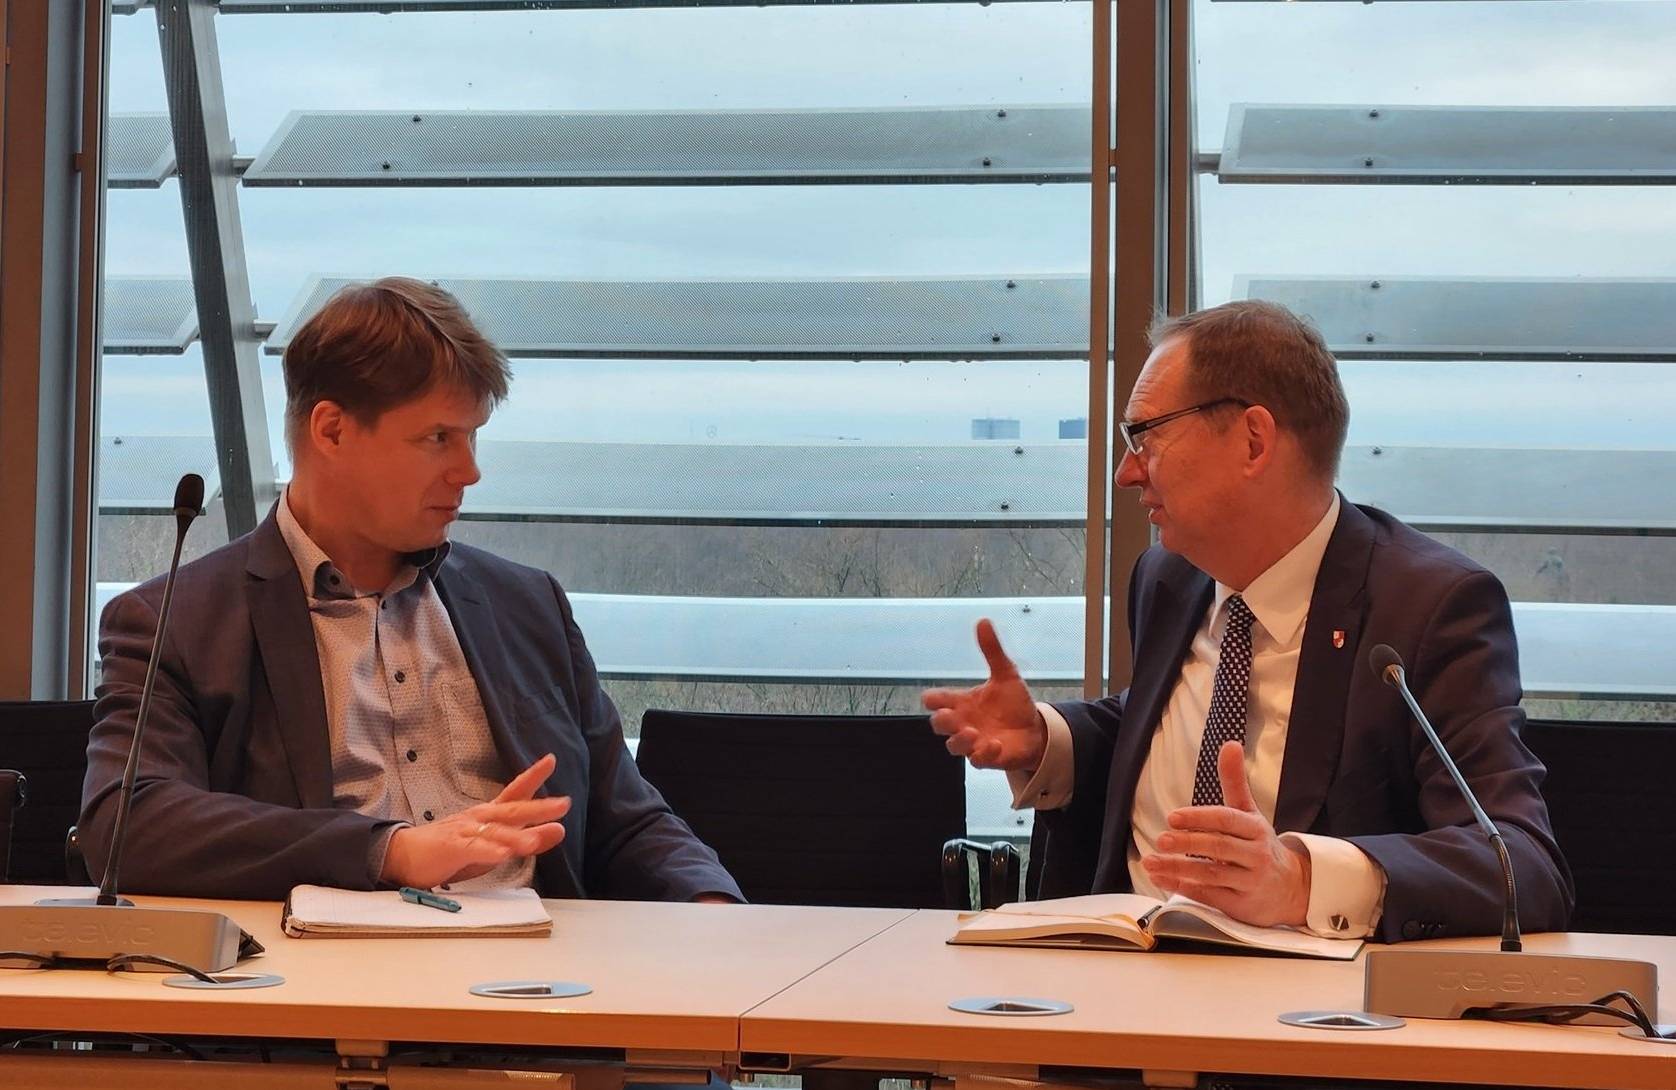 Poseł Roman Fritz (z prawej) podczas rozmowy z posłem AfD Steffenem Kotré, wizyta w Bundestagu. Fot. FB/Roman Fritz